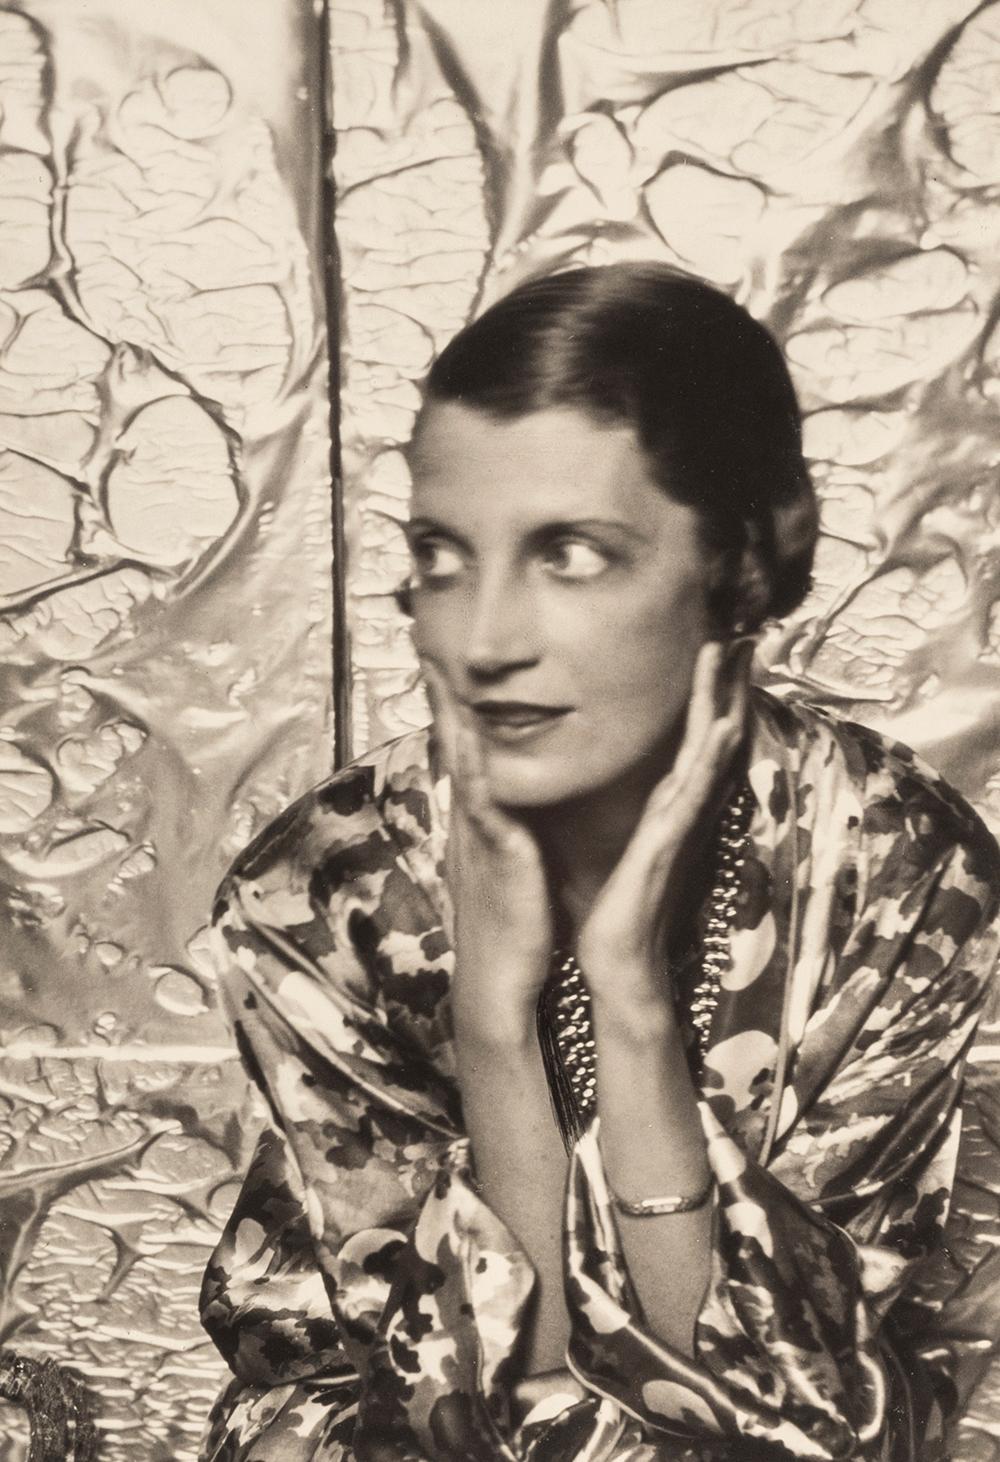 Mrs. Daisy Fellows, ca. 1930er Jahre - Cecil Beaton (Porträtfotografie)
Von unbekannter Hand mit "Mrs Reginald Fellowes" bezeichnet und auf der Rückseite des Passepartouts mit dem Tintenstempel des Studios von Sotheby's Cecil Beaton